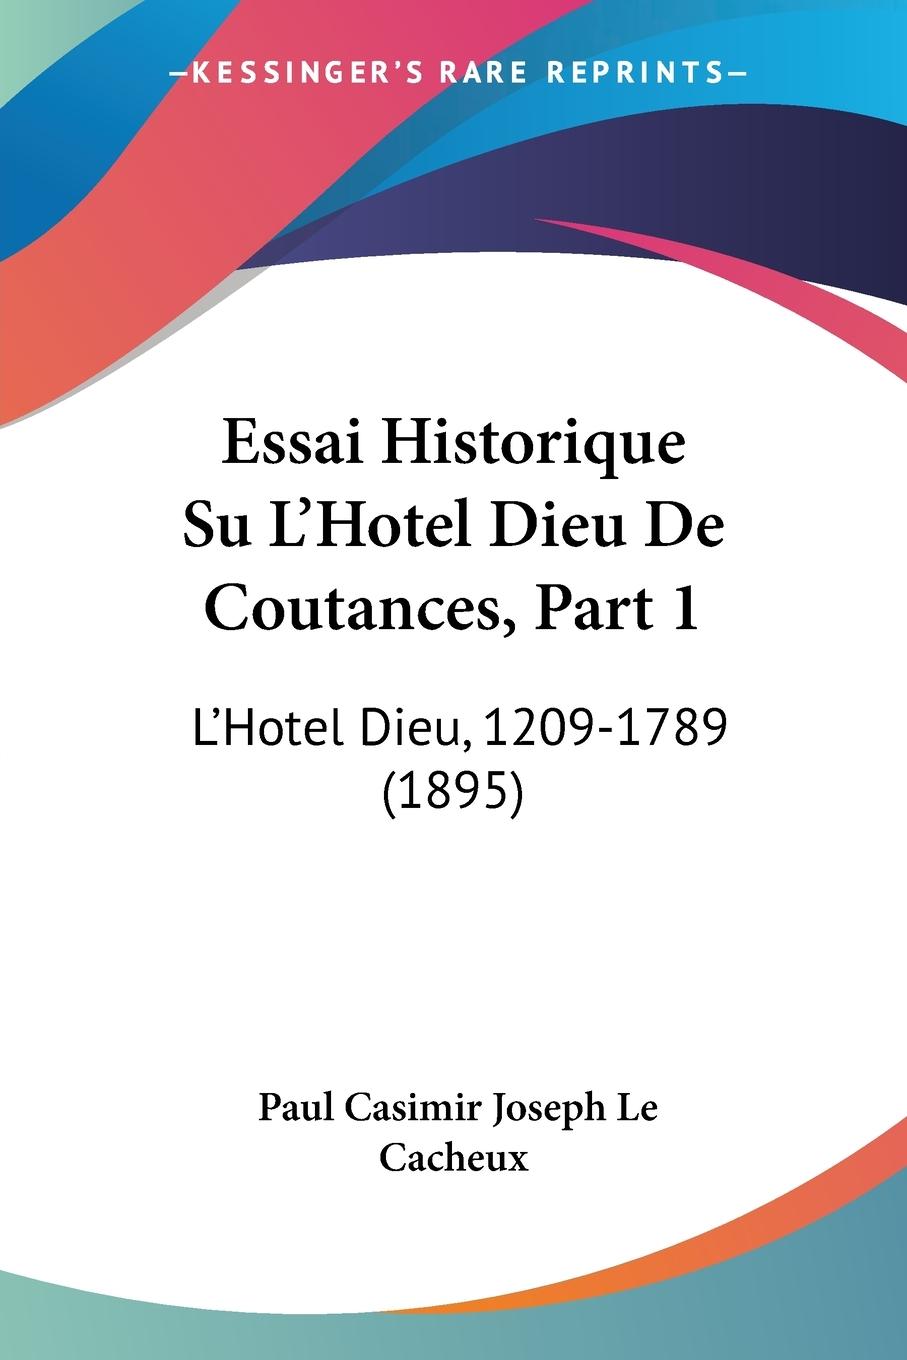 Essai Historique Su L Hotel Dieu De Coutances, Part 1 - Le Cacheux, Paul Casimir Joseph